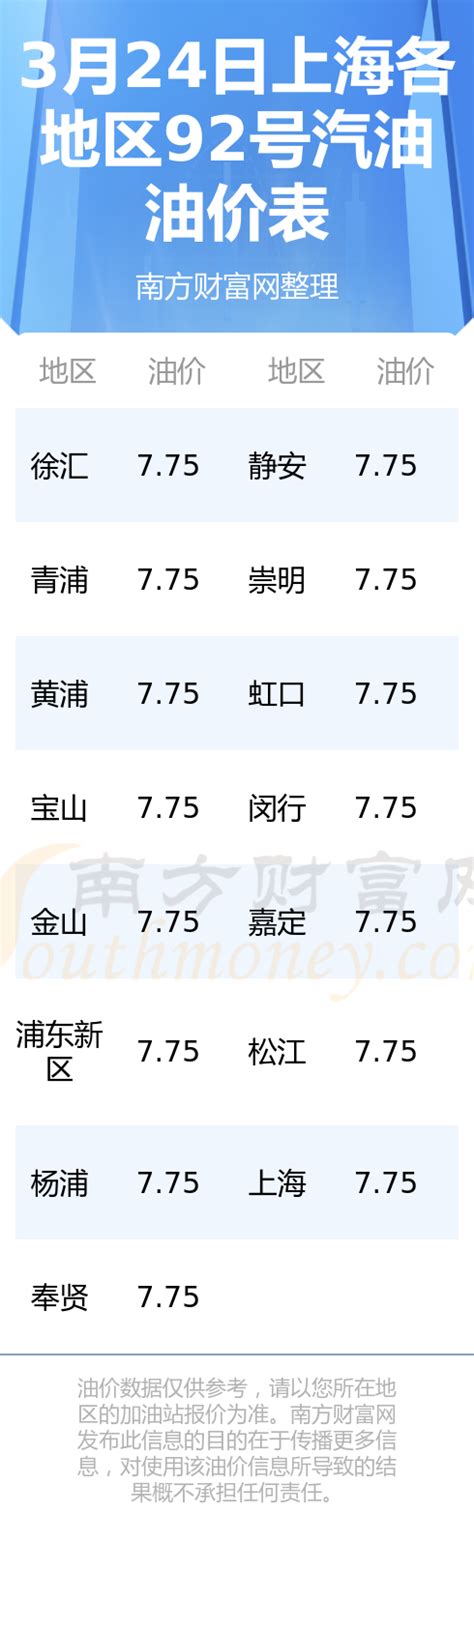 今日油价查询|3月24日上海92号汽油油价一览表 - 南方财富网